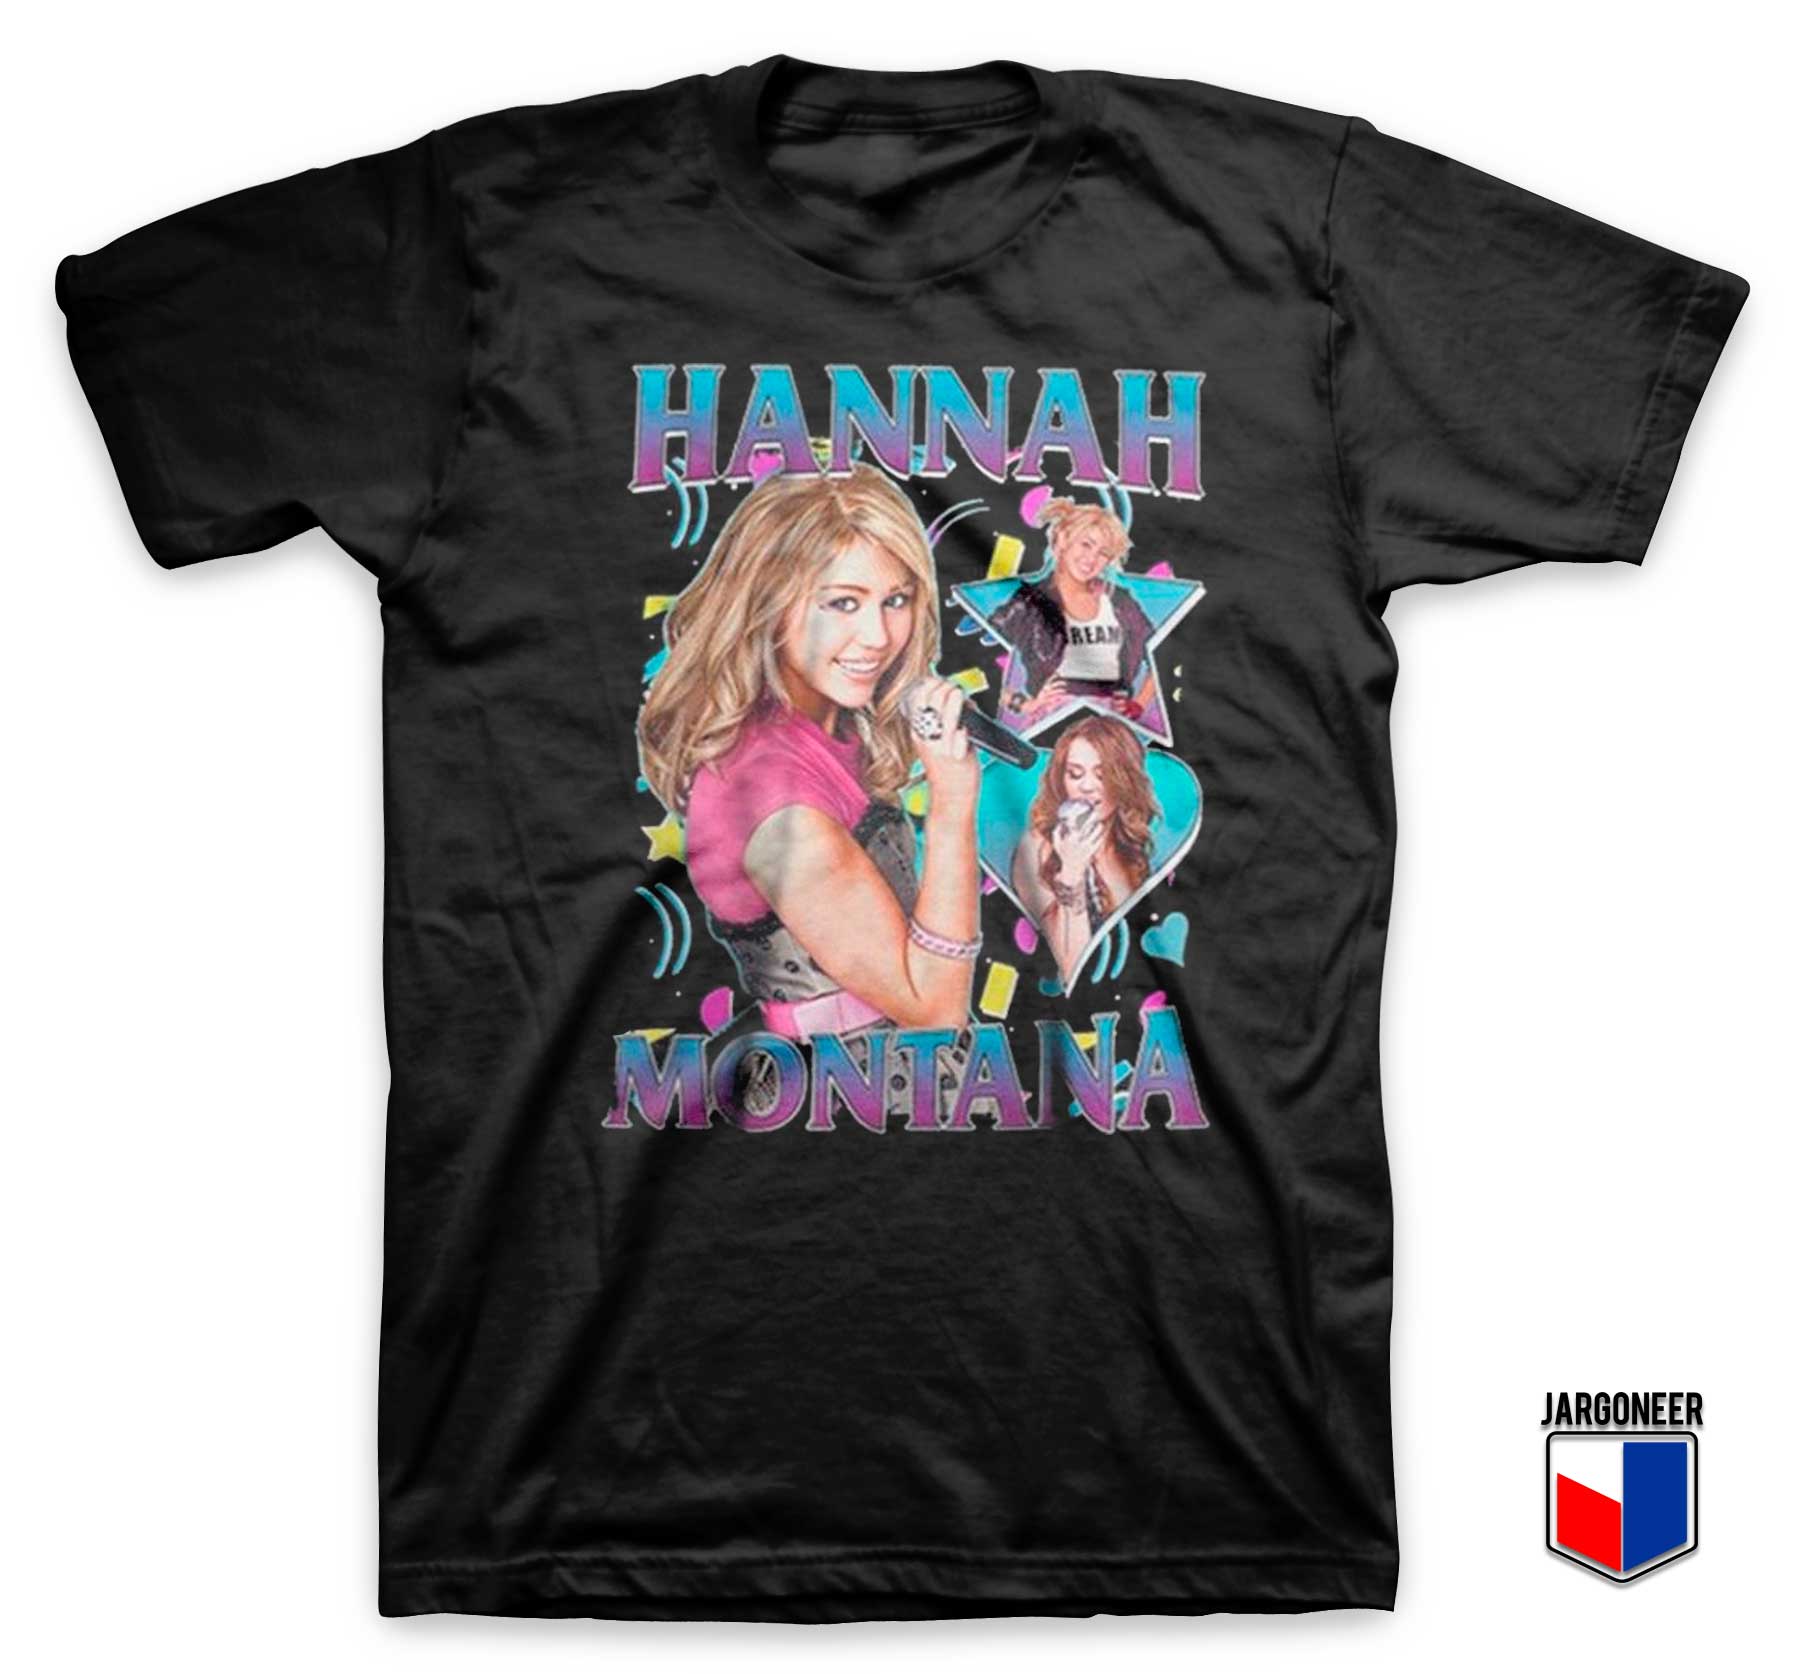 Hannah Montana T Shirt - Shop Unique Graphic Cool Shirt Designs